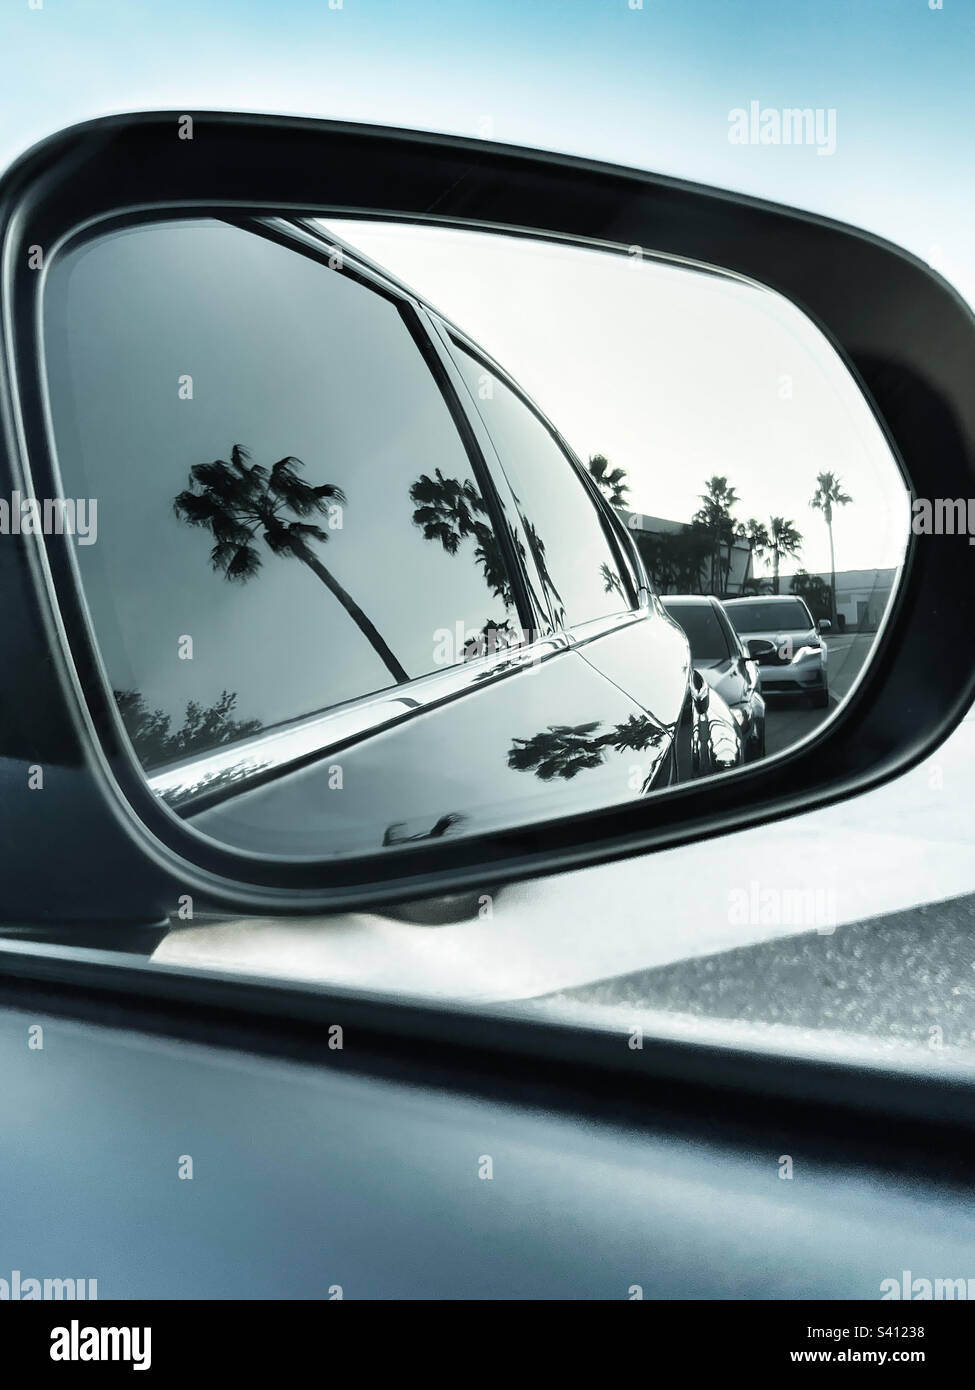 Rückspiegel Innerhalb Des Autos Stockbild - Bild von windfang